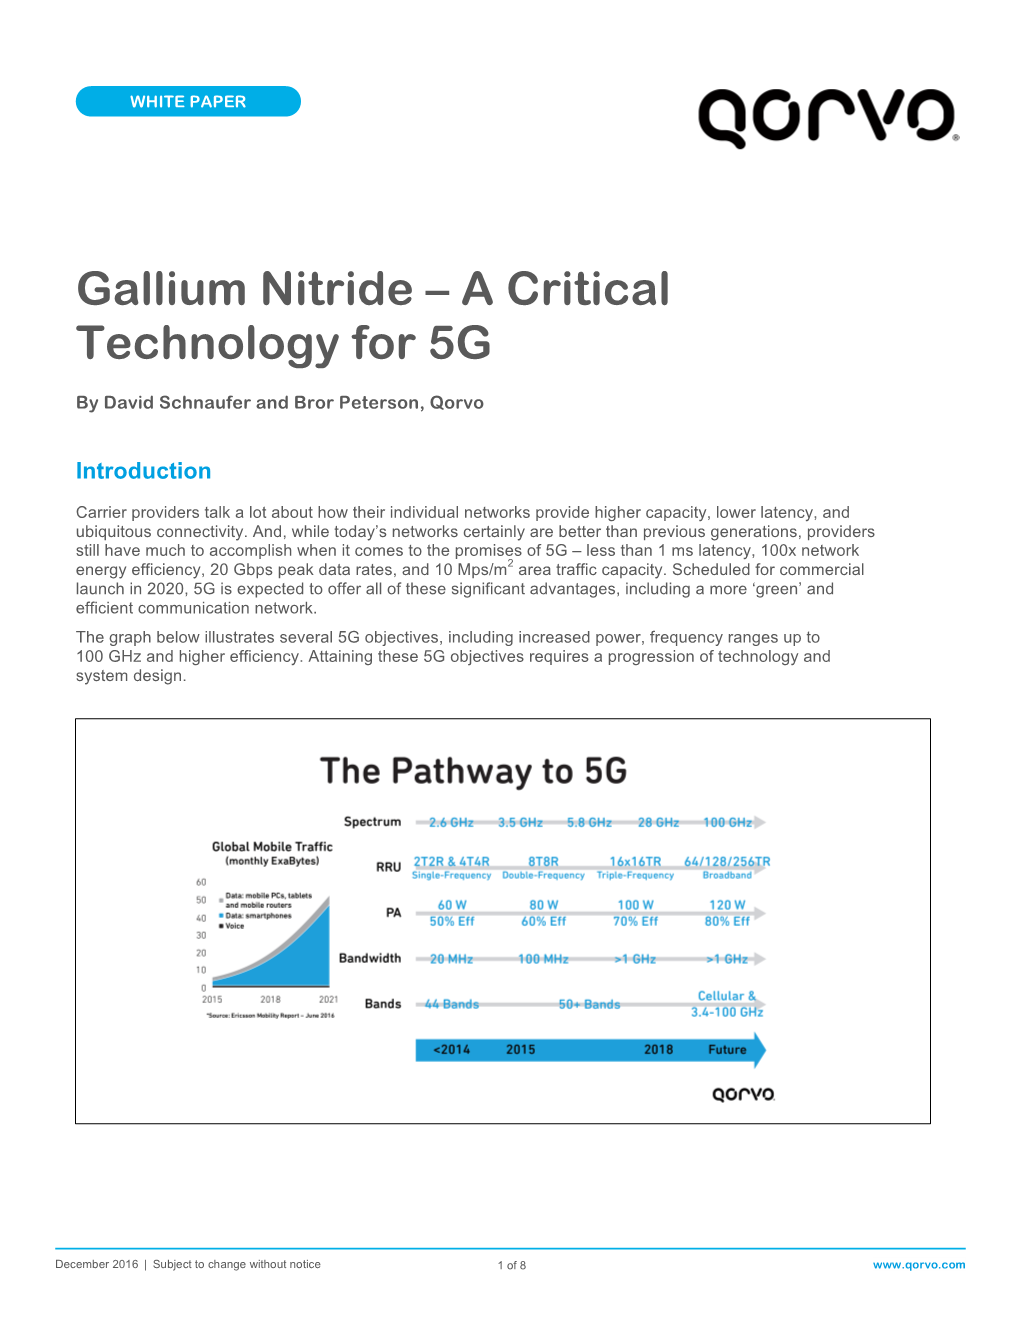 Gallium Nitride – a Critical Technology for 5G